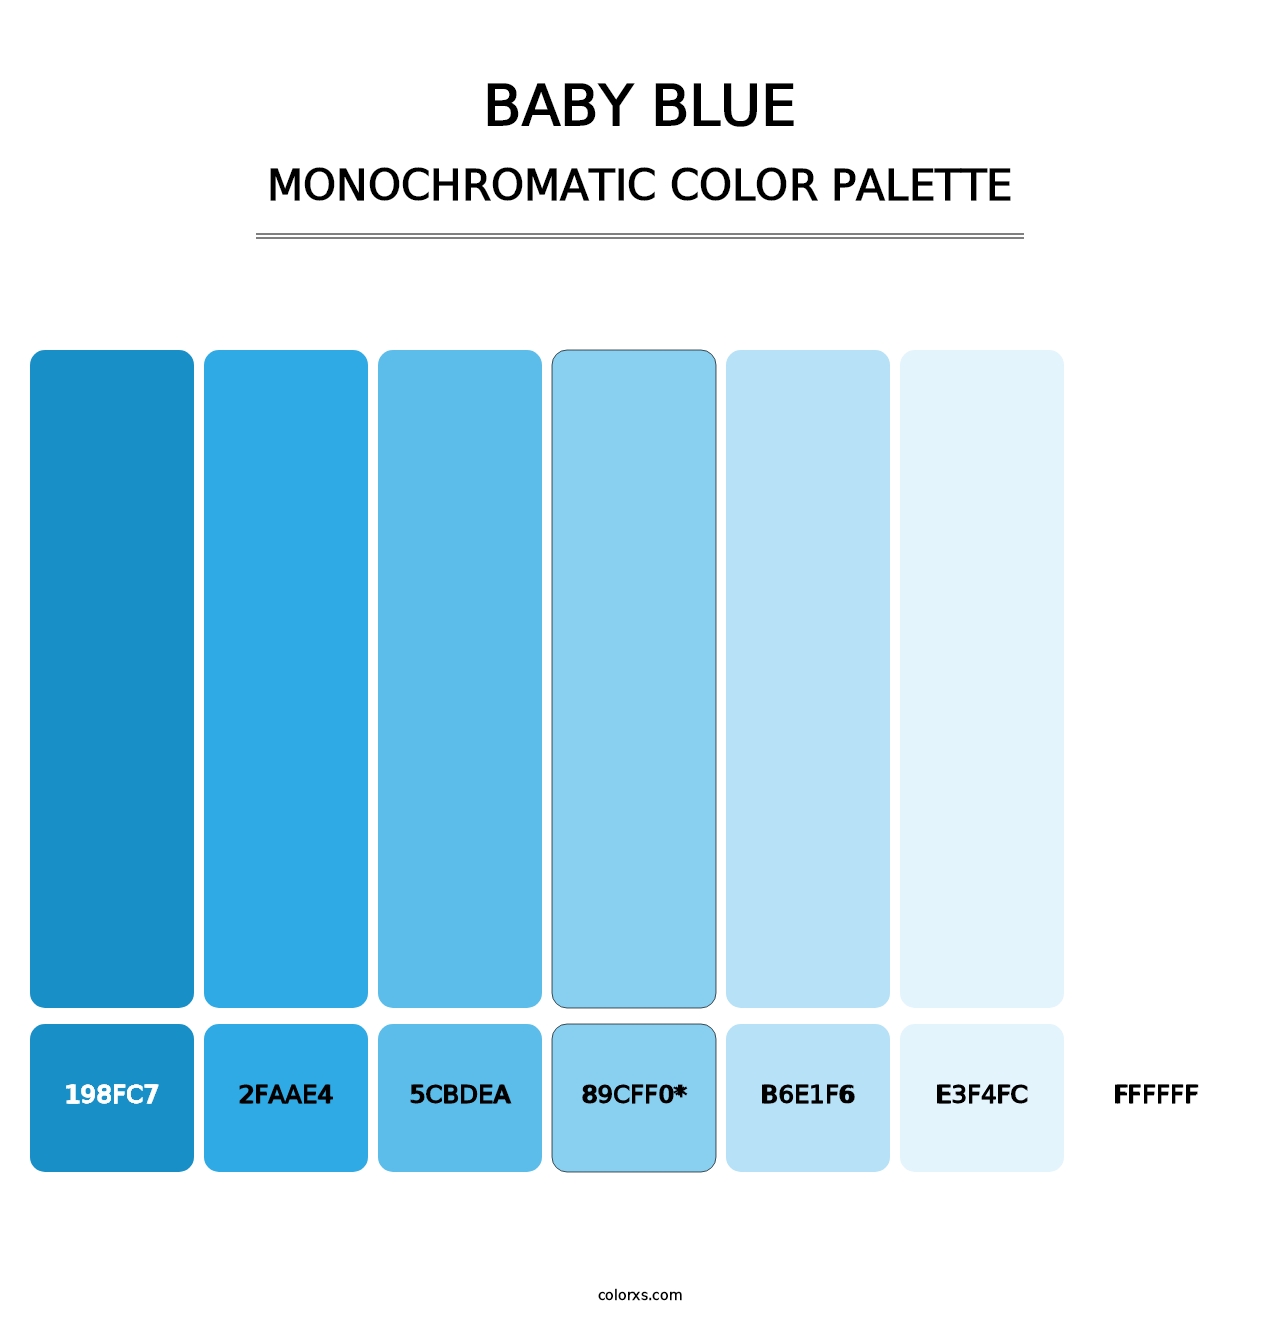 Baby Blue - Monochromatic Color Palette